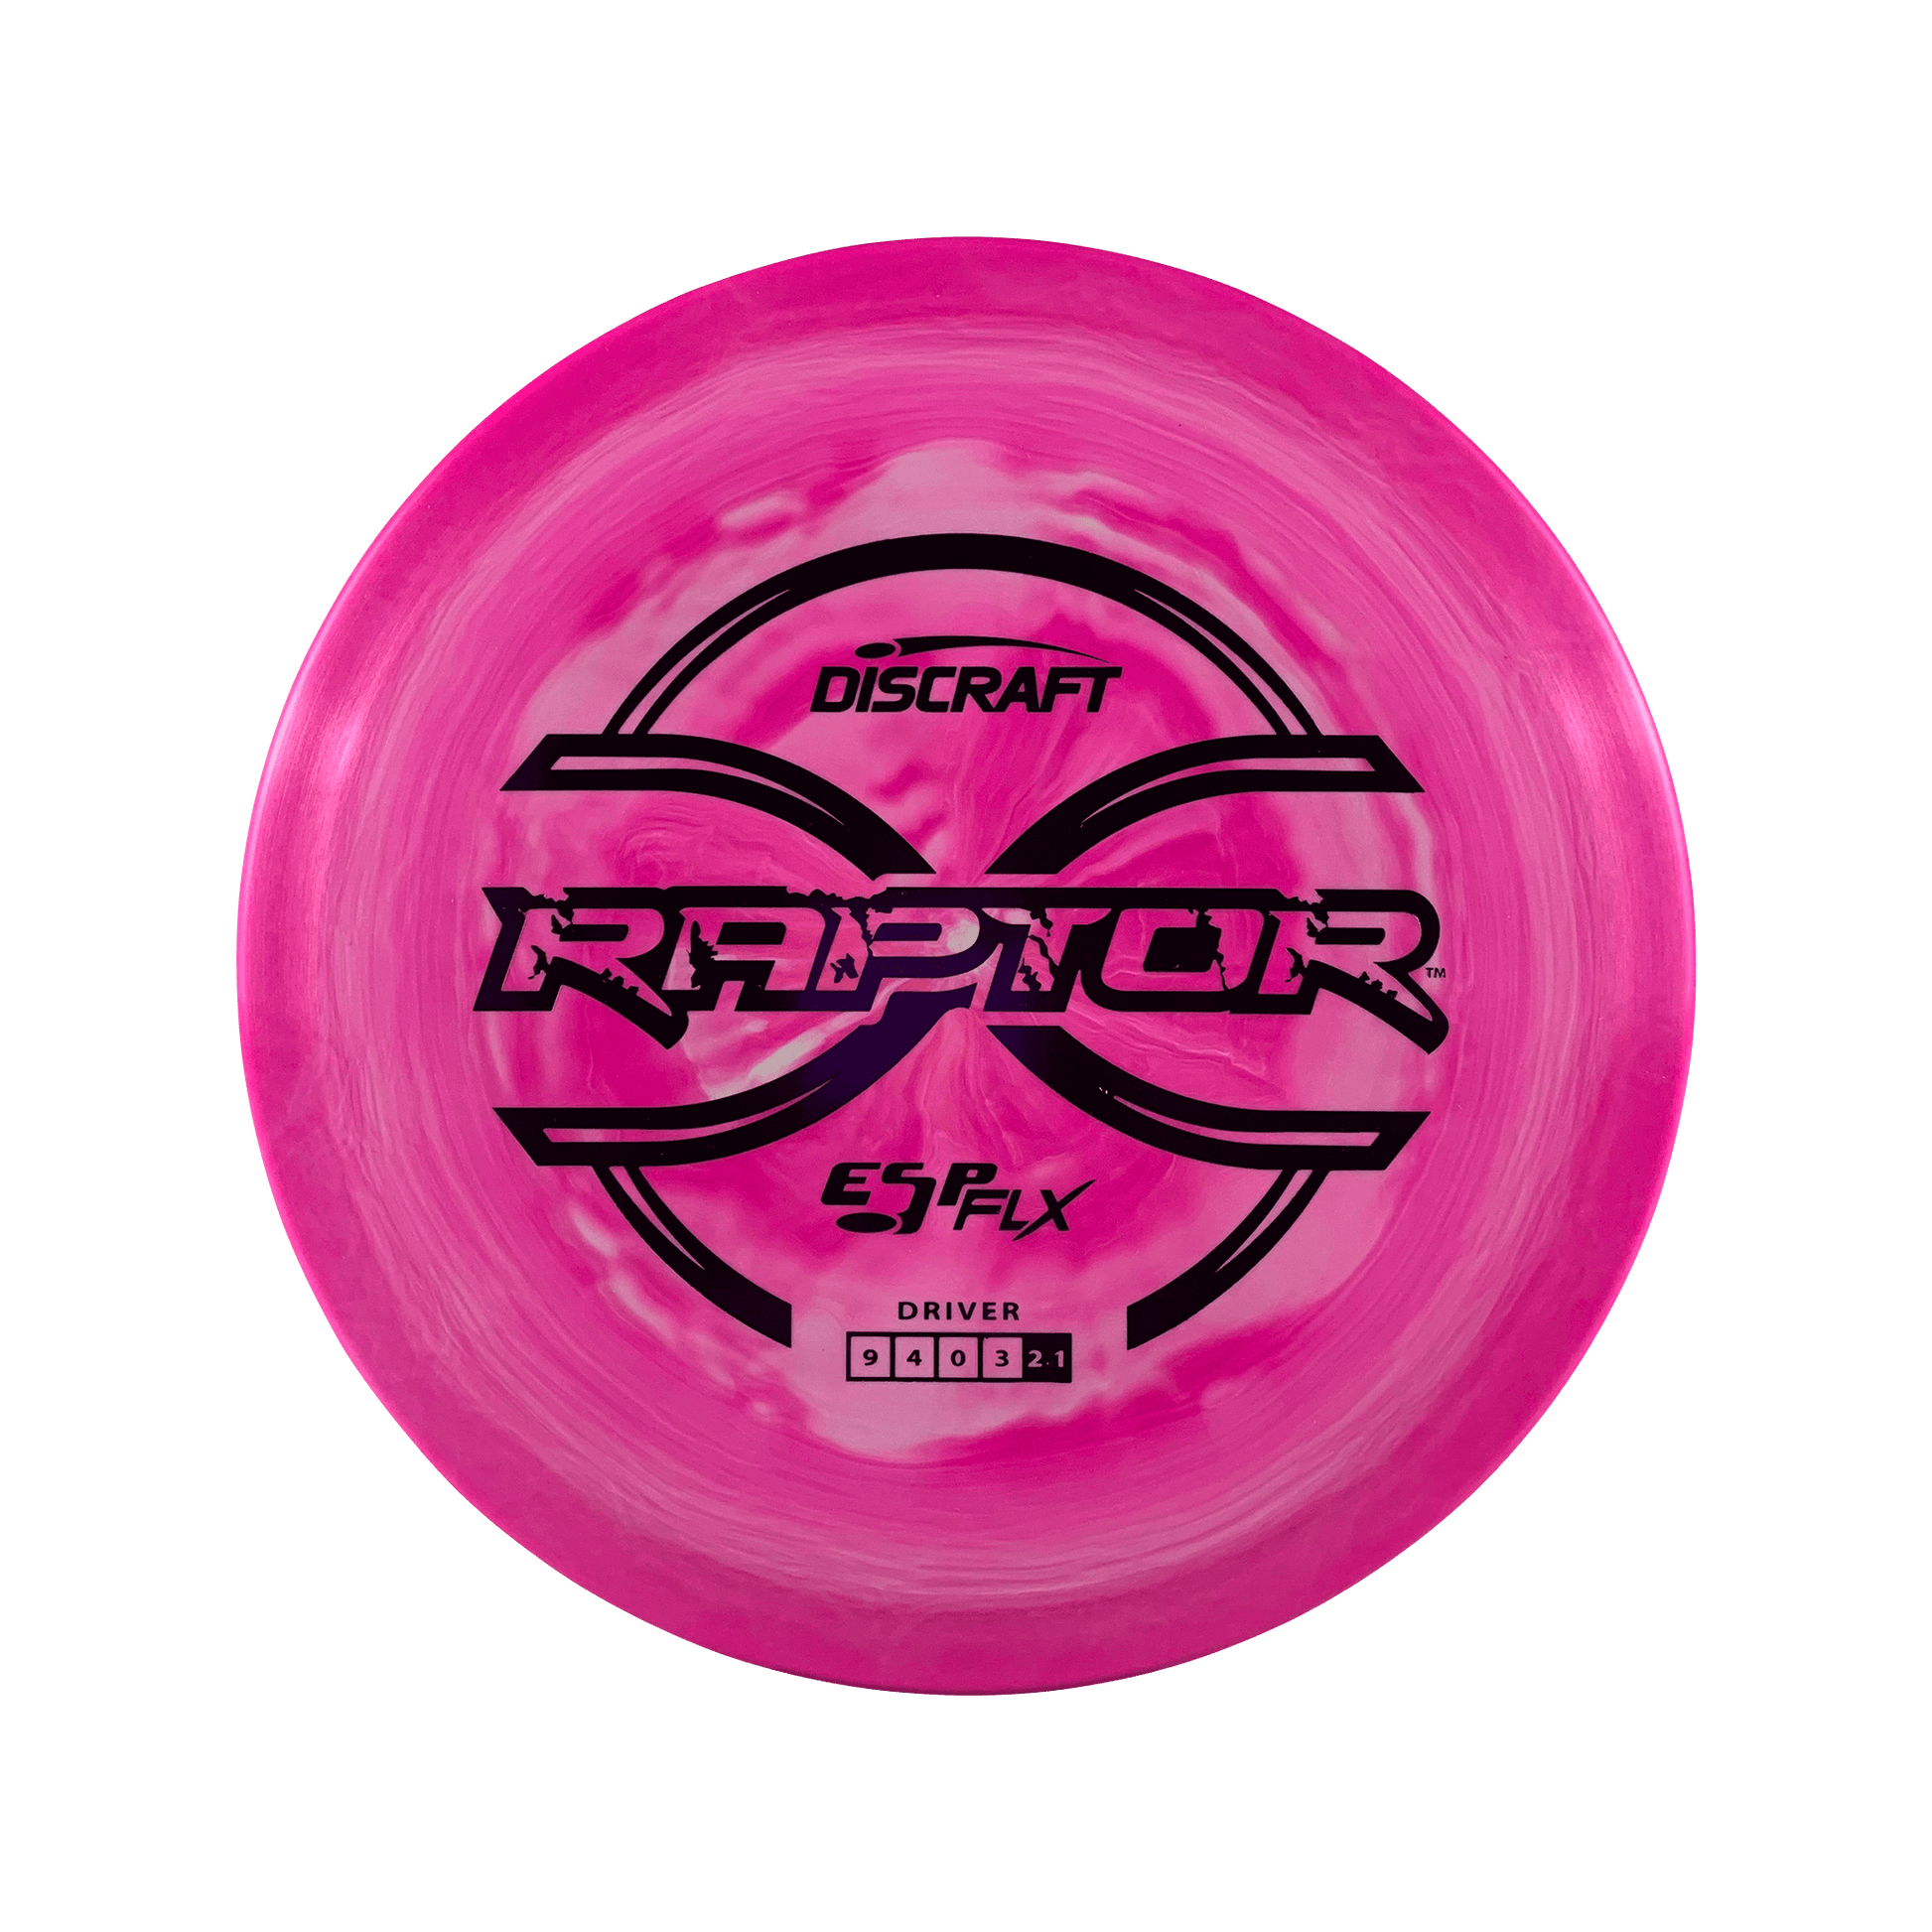 ESP FLX Raptor Disc Discraft multi / hot pink 170 